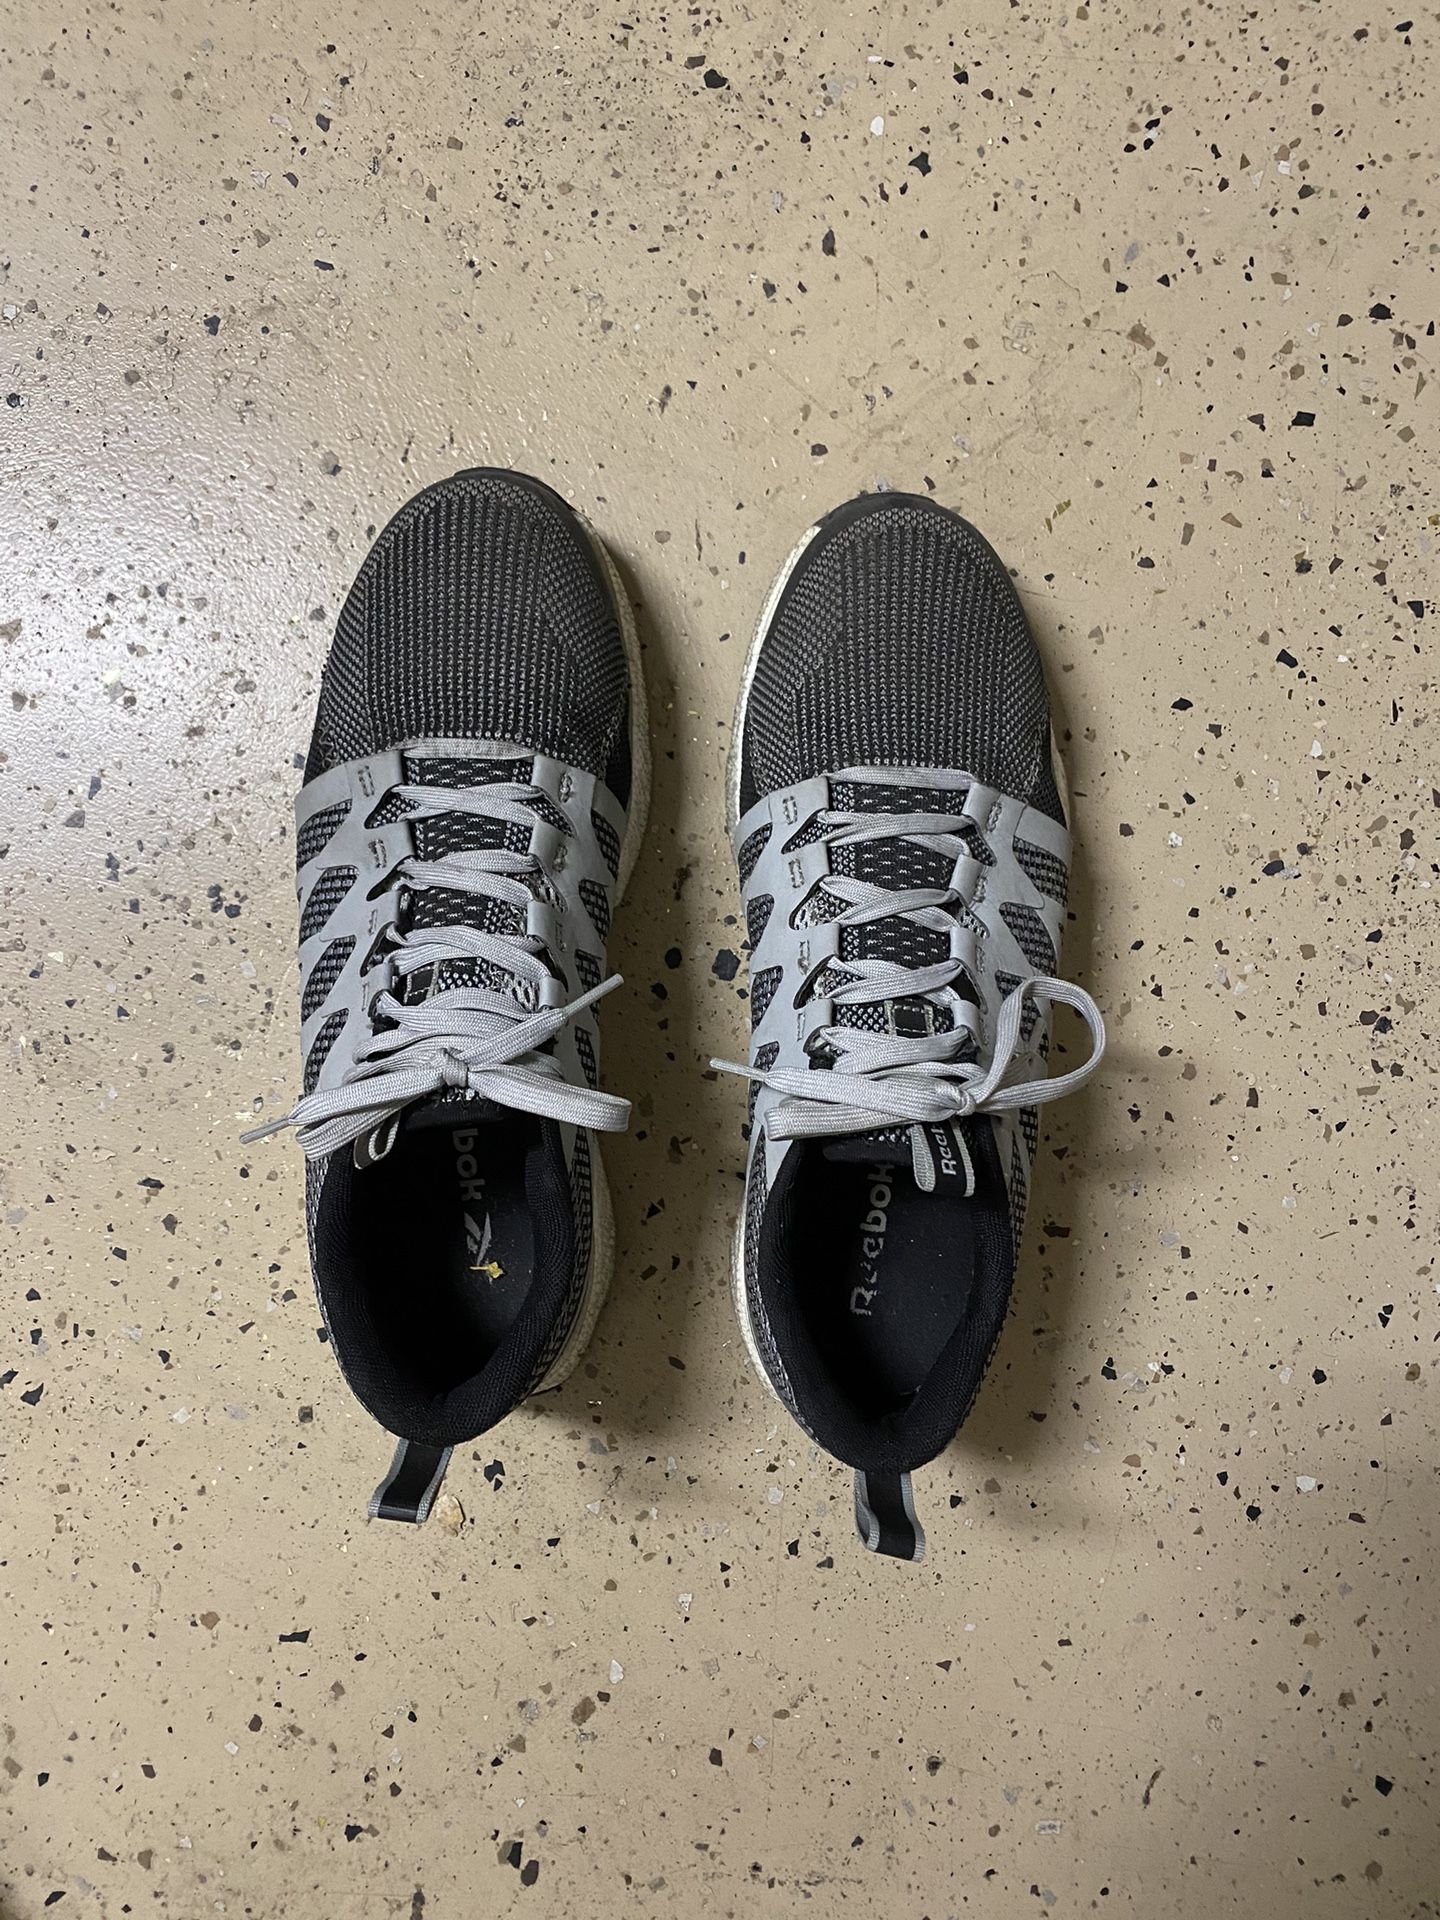 Steel Toe Reebok Men’s Shoes Size 9.5